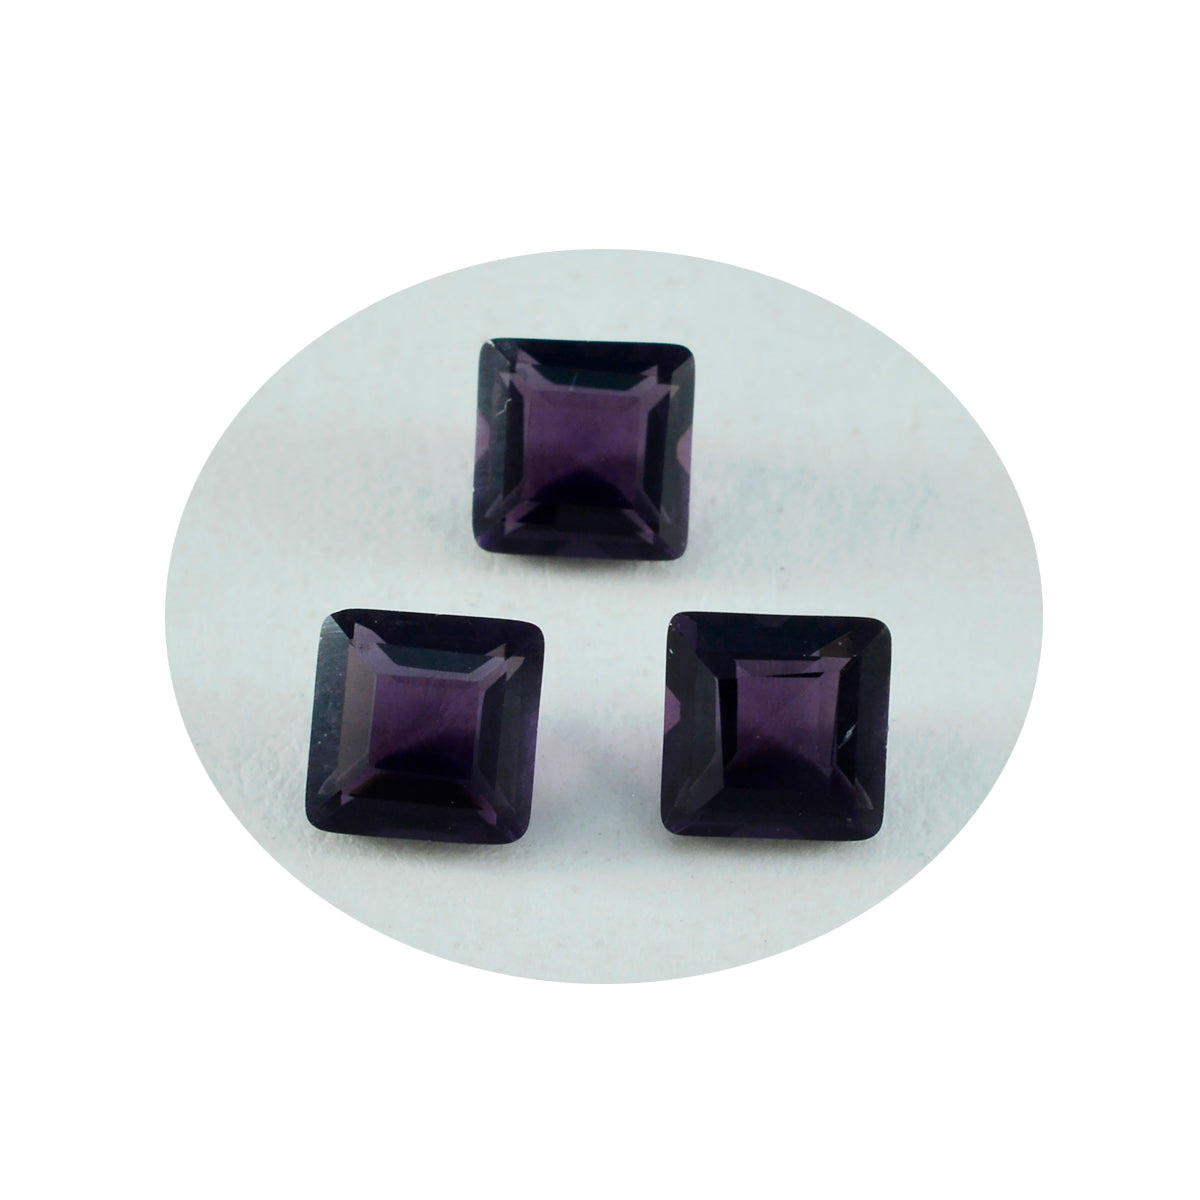 riyogems 1 шт. фиолетовый аметист cz ограненный 10x10 мм квадратной формы драгоценные камни удивительного качества